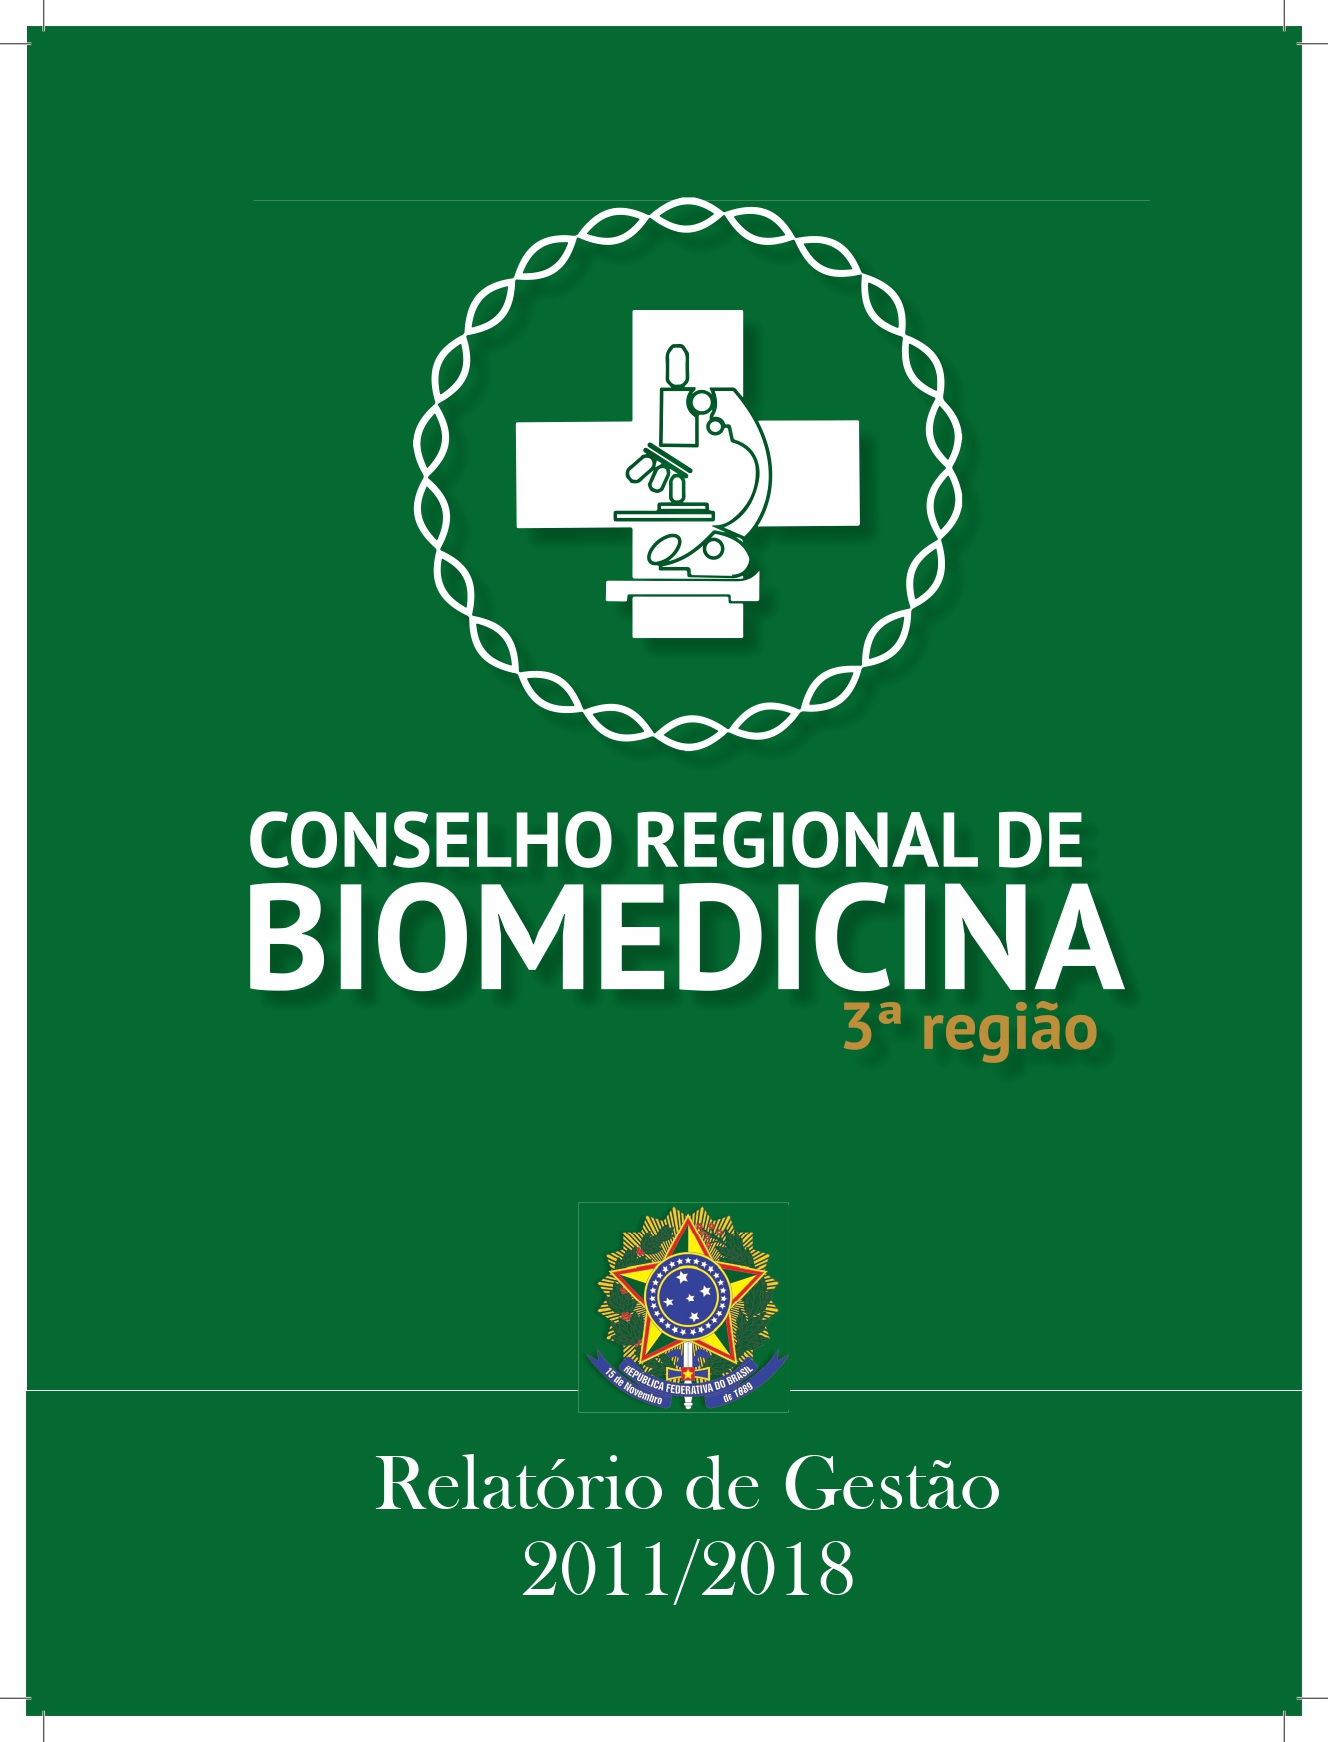 Conselho de Biomedicina Relatorio de Gestao 2011 2018 page 0001